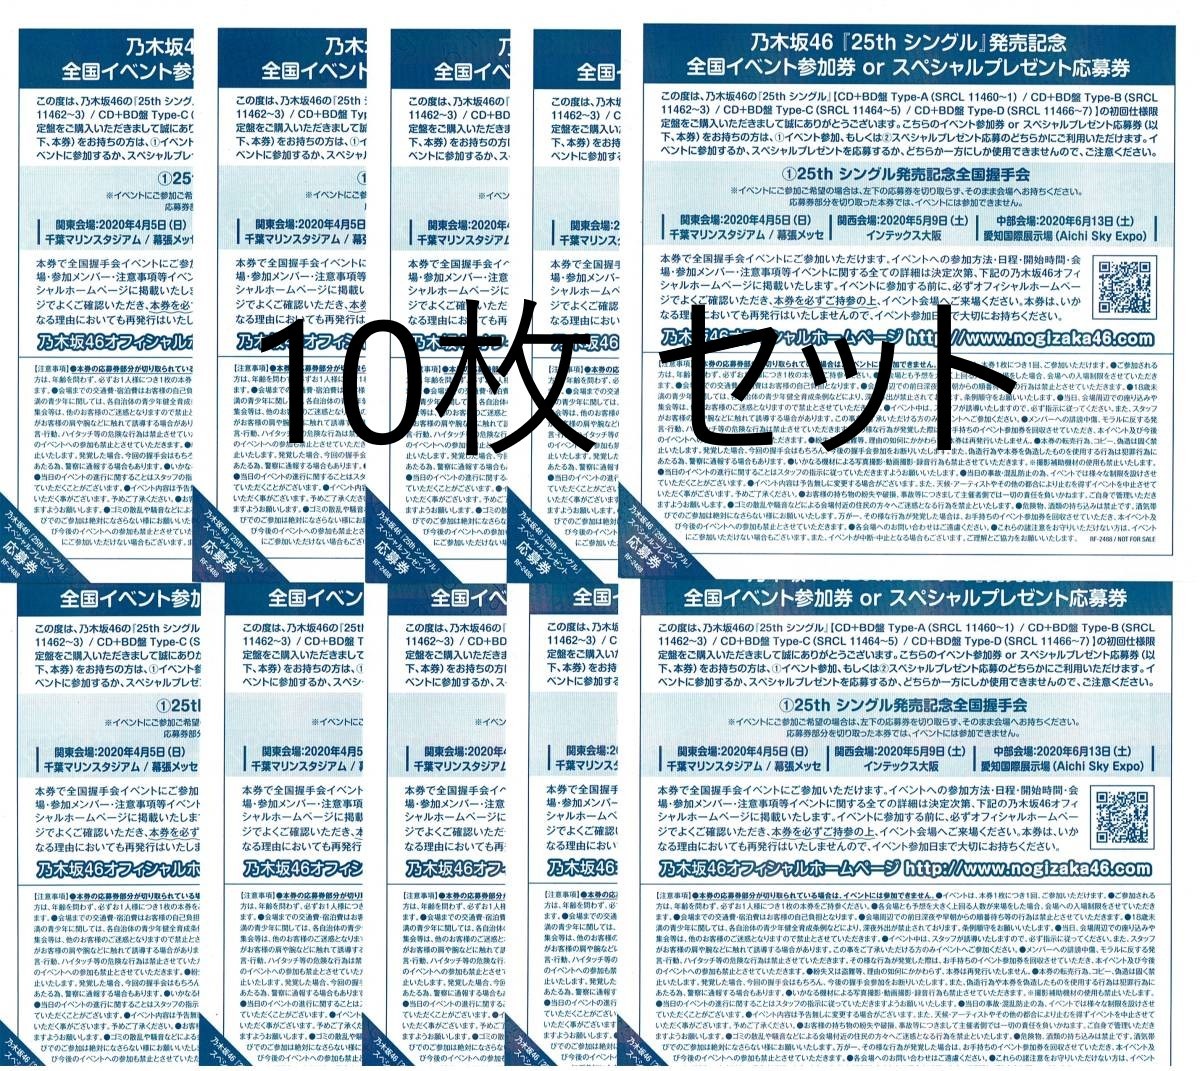 乃木坂46 しあわせの保護色 スペシャルプレゼント応募券 60枚 tivicr.com